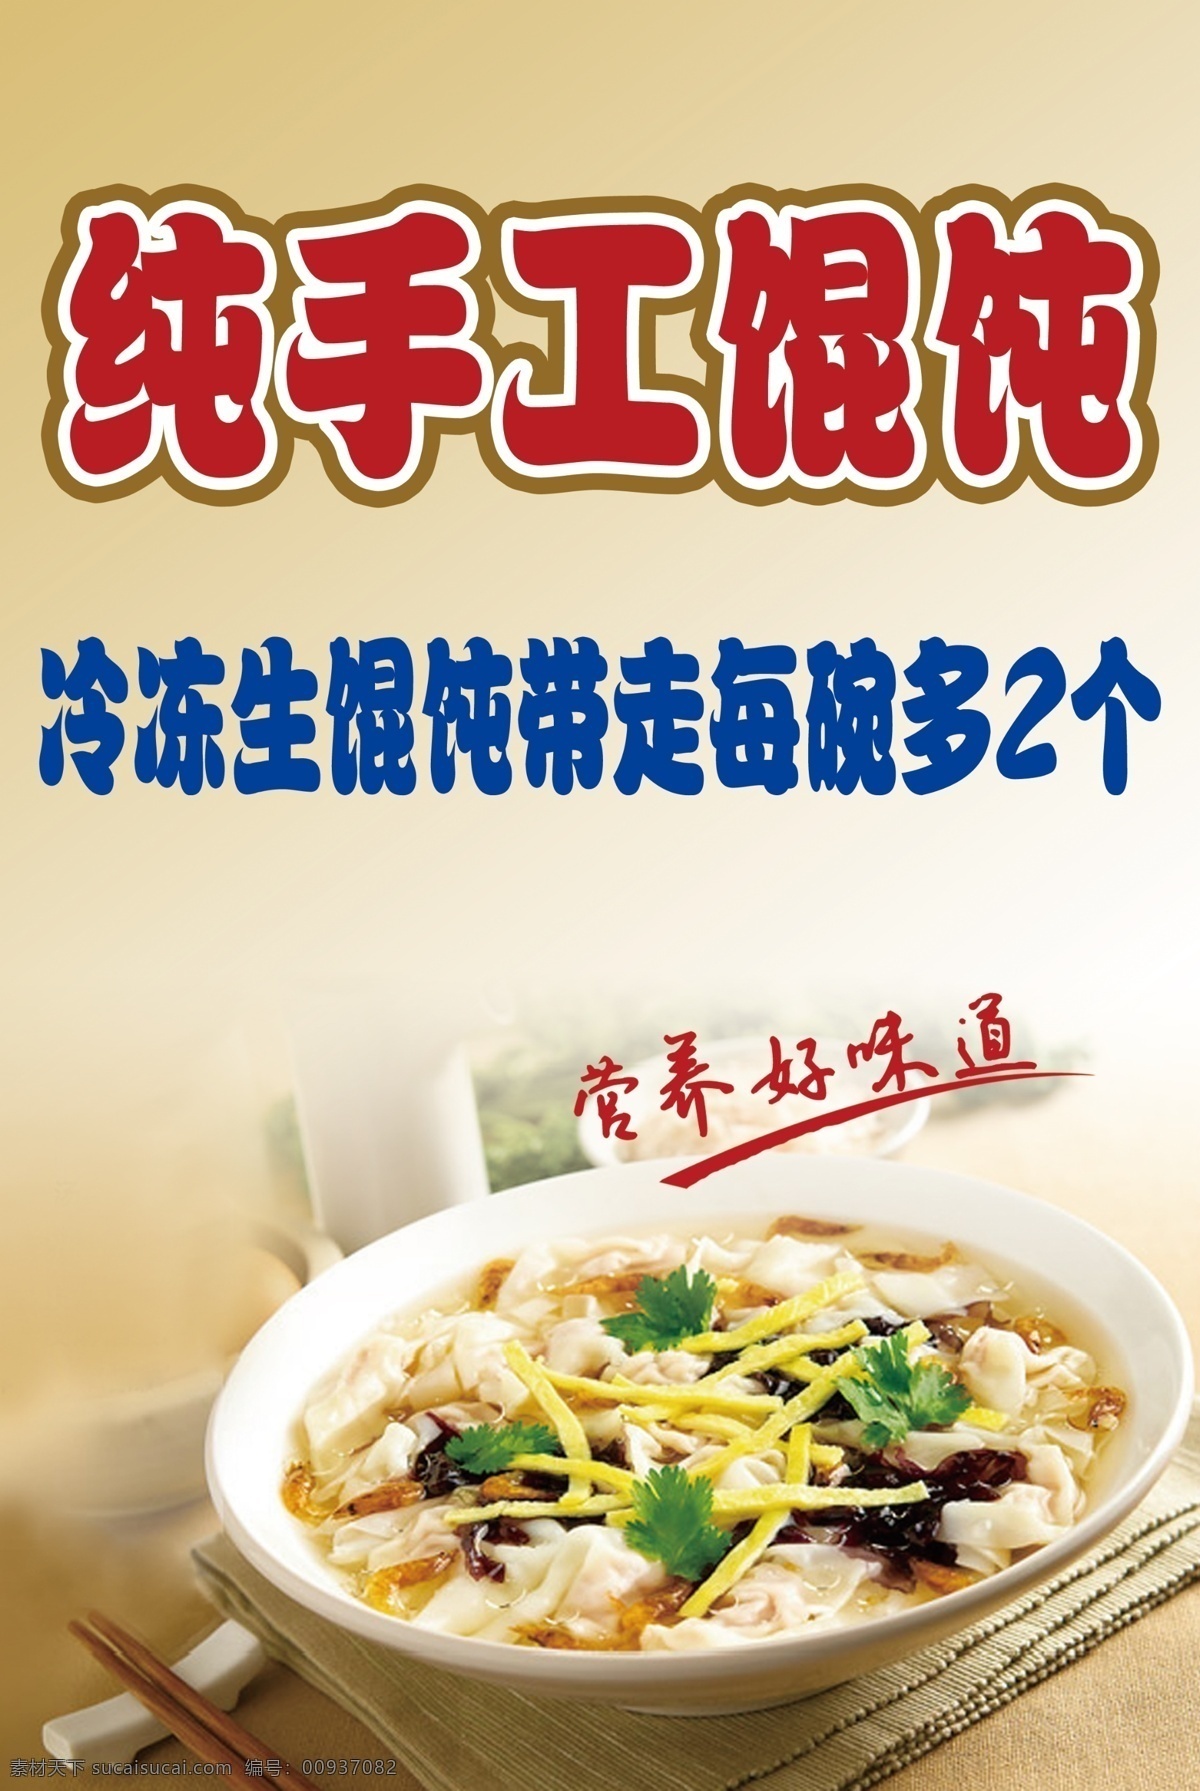 纯 手工 馄饨 水饺 海报 纯手工 营养 美味 好味道 黄色 背景 餐饮